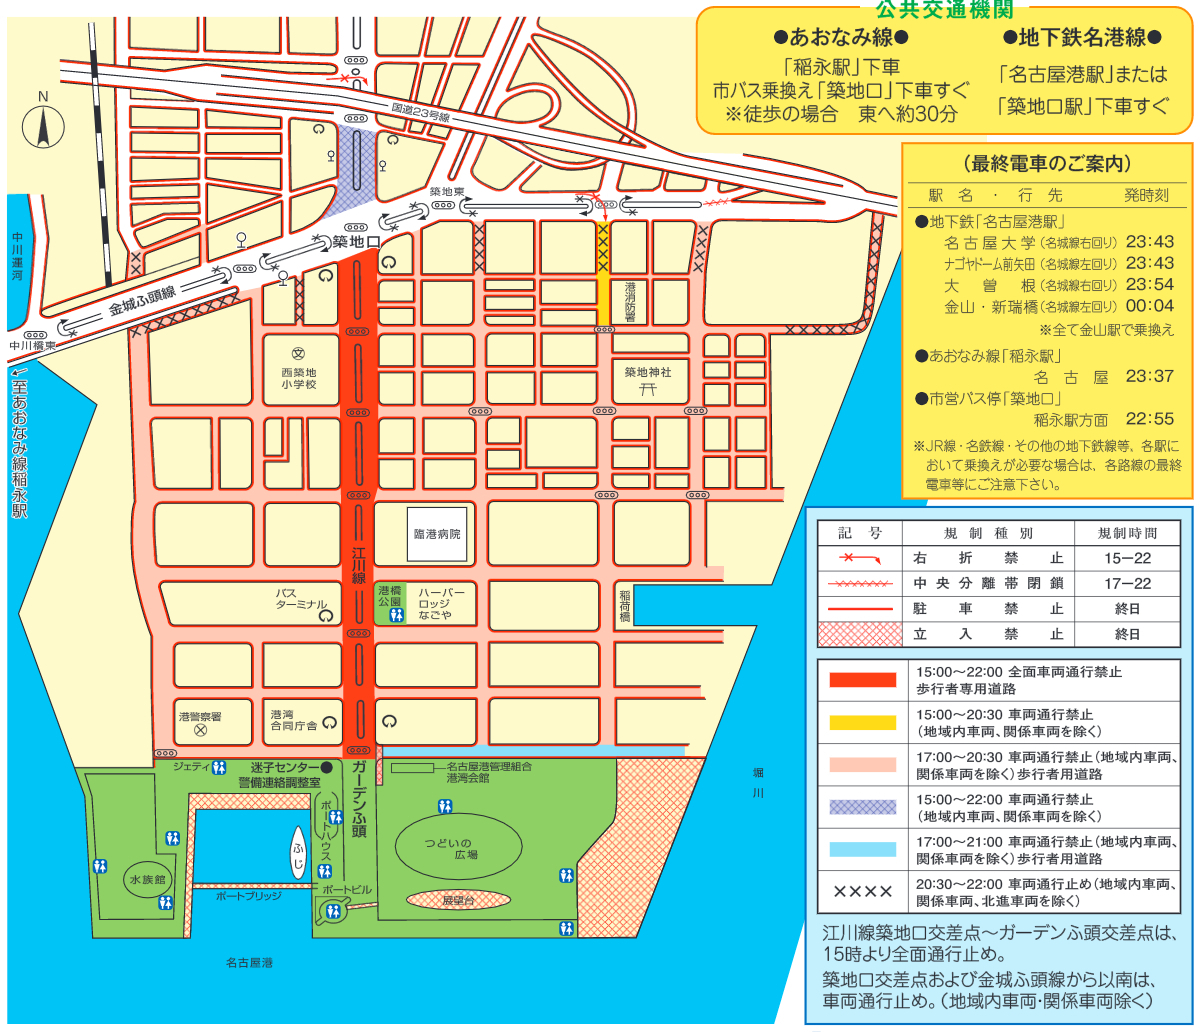 名古屋港祭り花火大会 16 時間 駐車場 交通規制 穴場と屋台